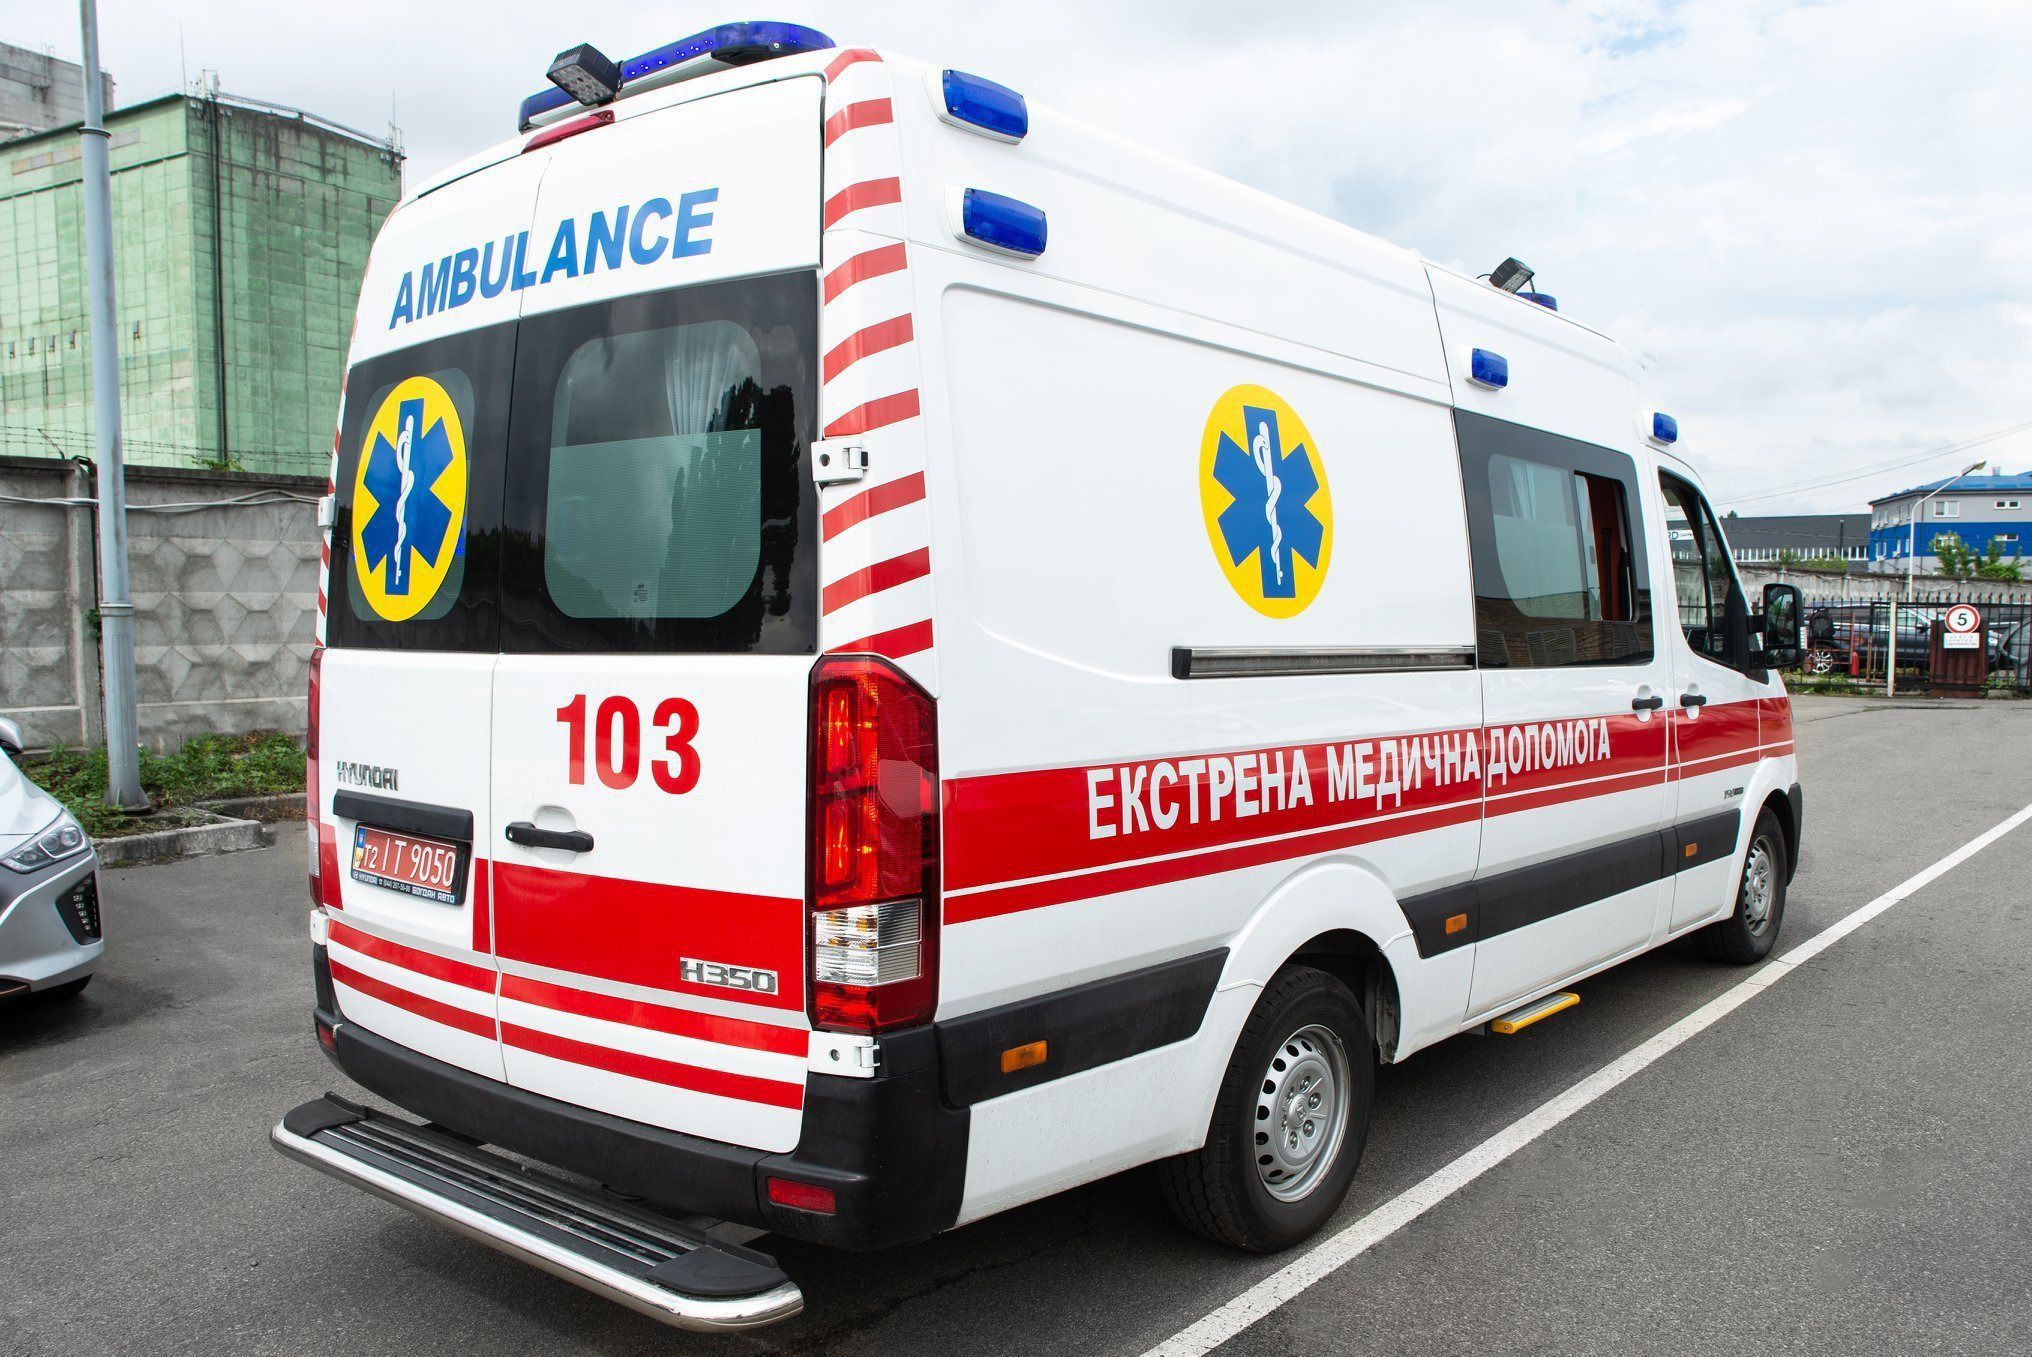 В Україні в роботі бригад швидкої допомоги очікують на зміни. В Україні до 2025 року запровадять нові стандарти роботи екстреної (швидкої) медичної допомоги.